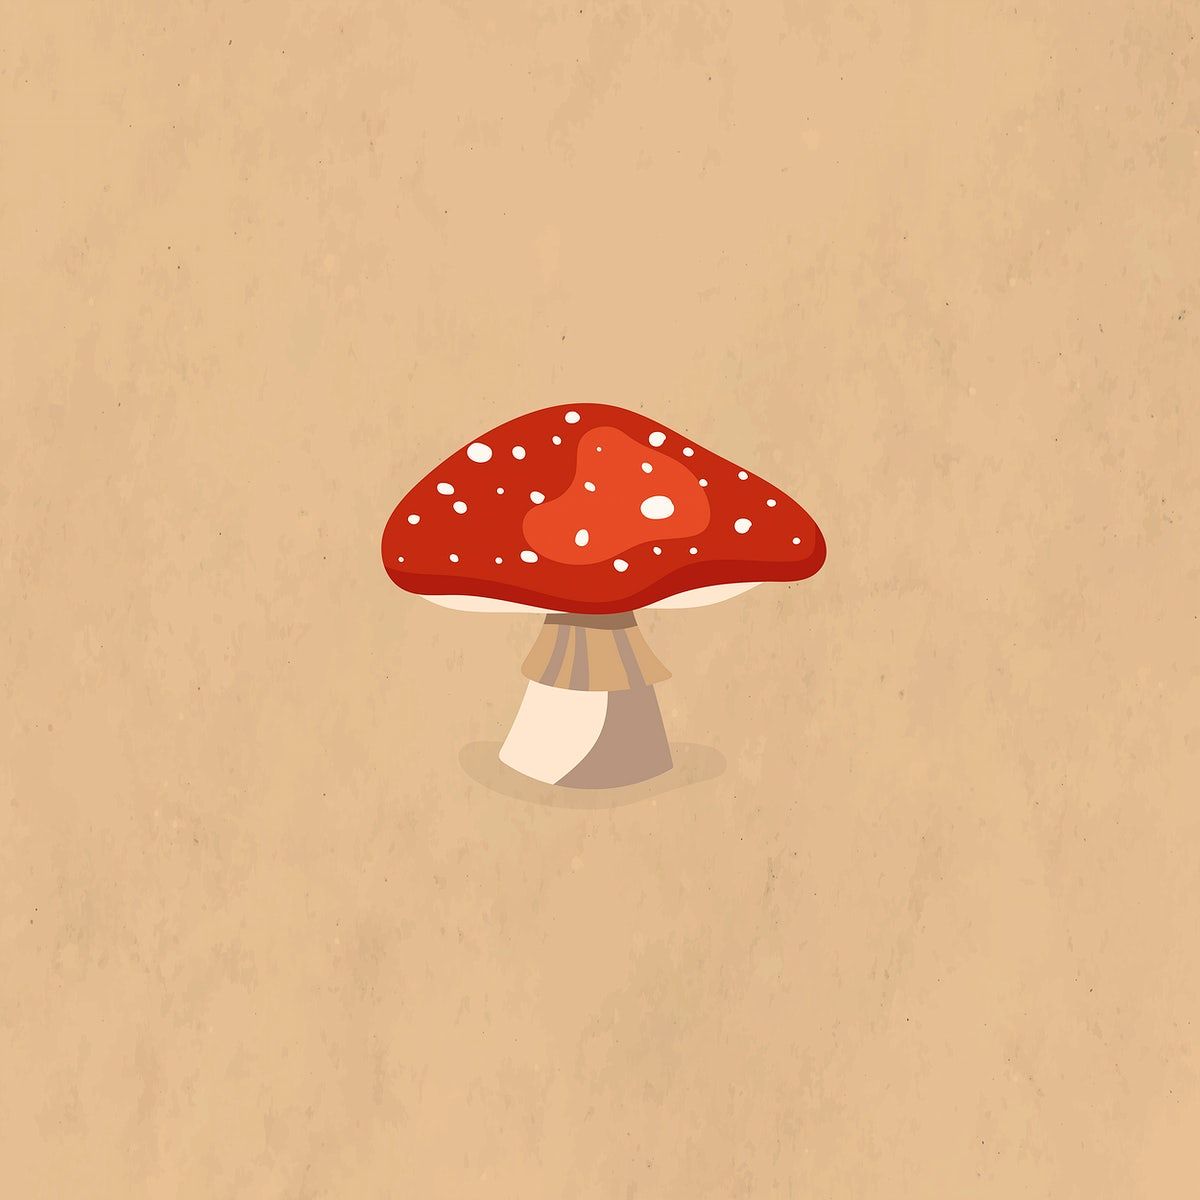 Red Mushroom Autumn Design Element Vector Premium